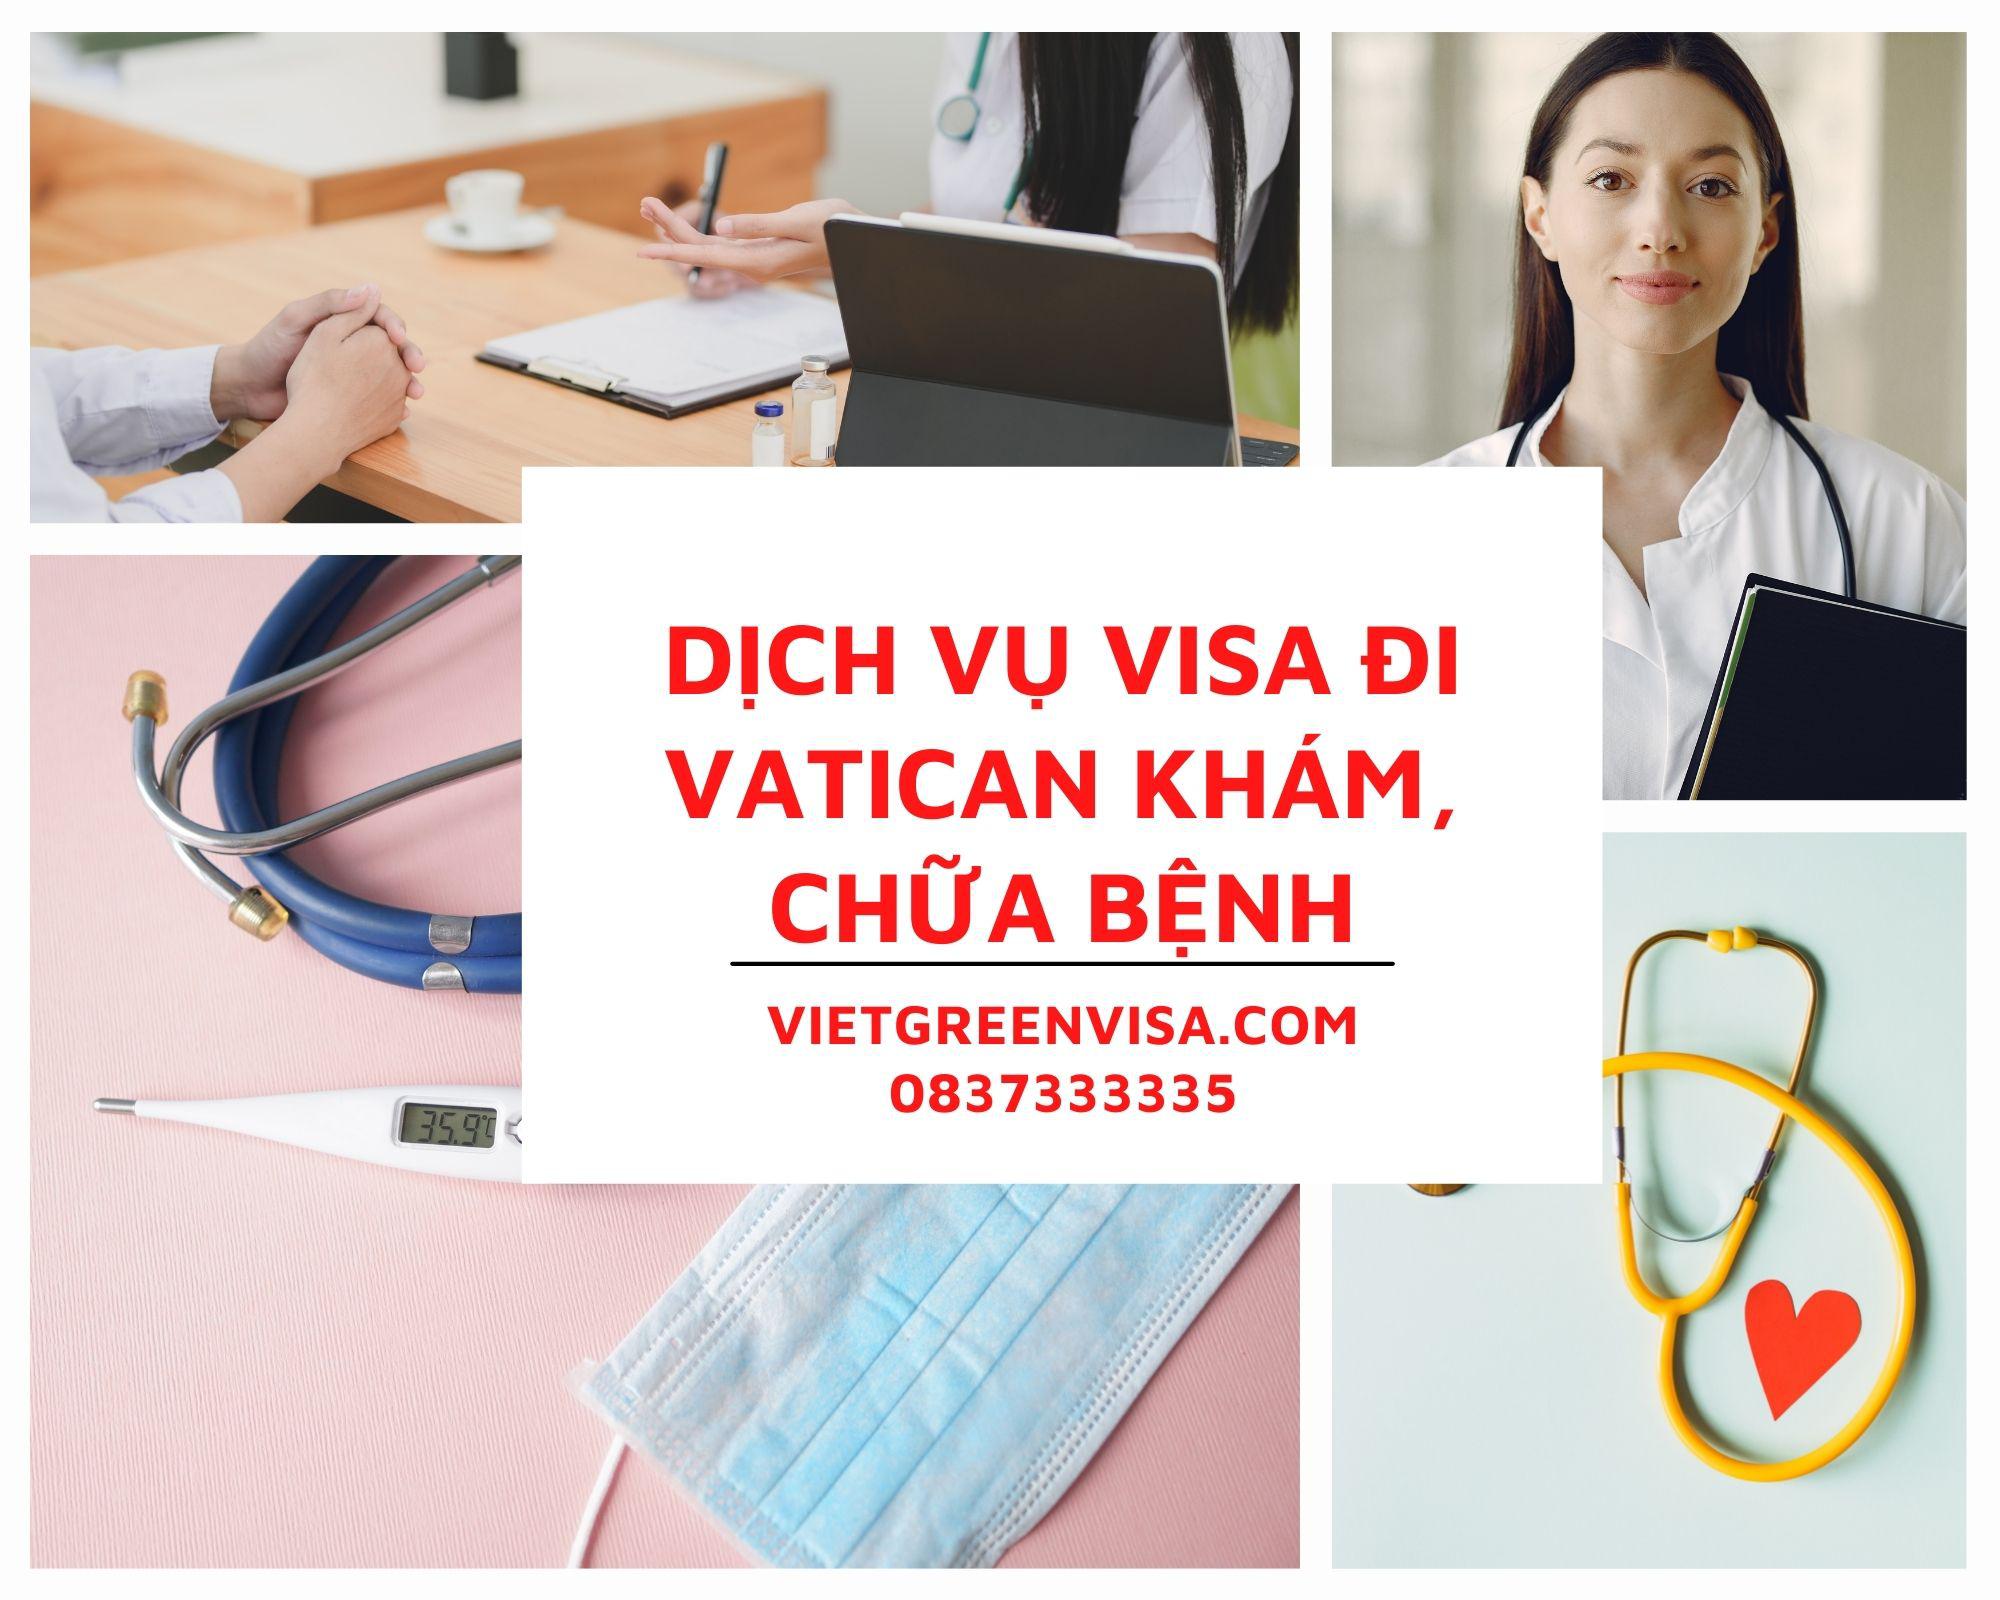 Tư vấn visa đi Vatican khám chữa bệnh nhanh chóng